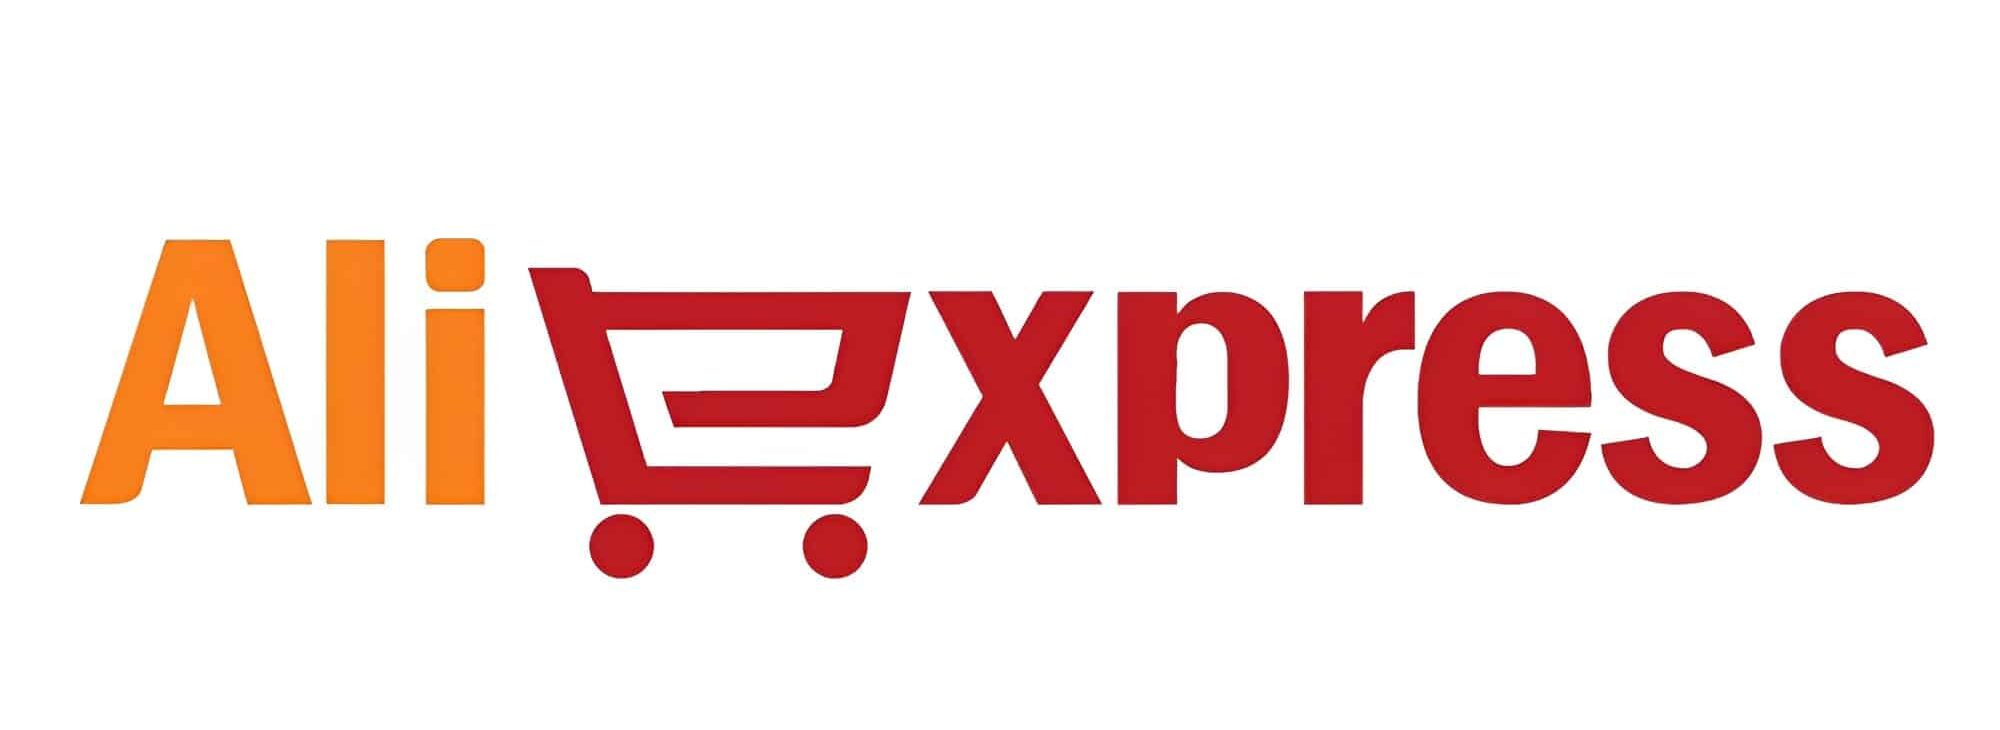 AliExpress.com là website mua bán dành riêng cho người nước ngoài